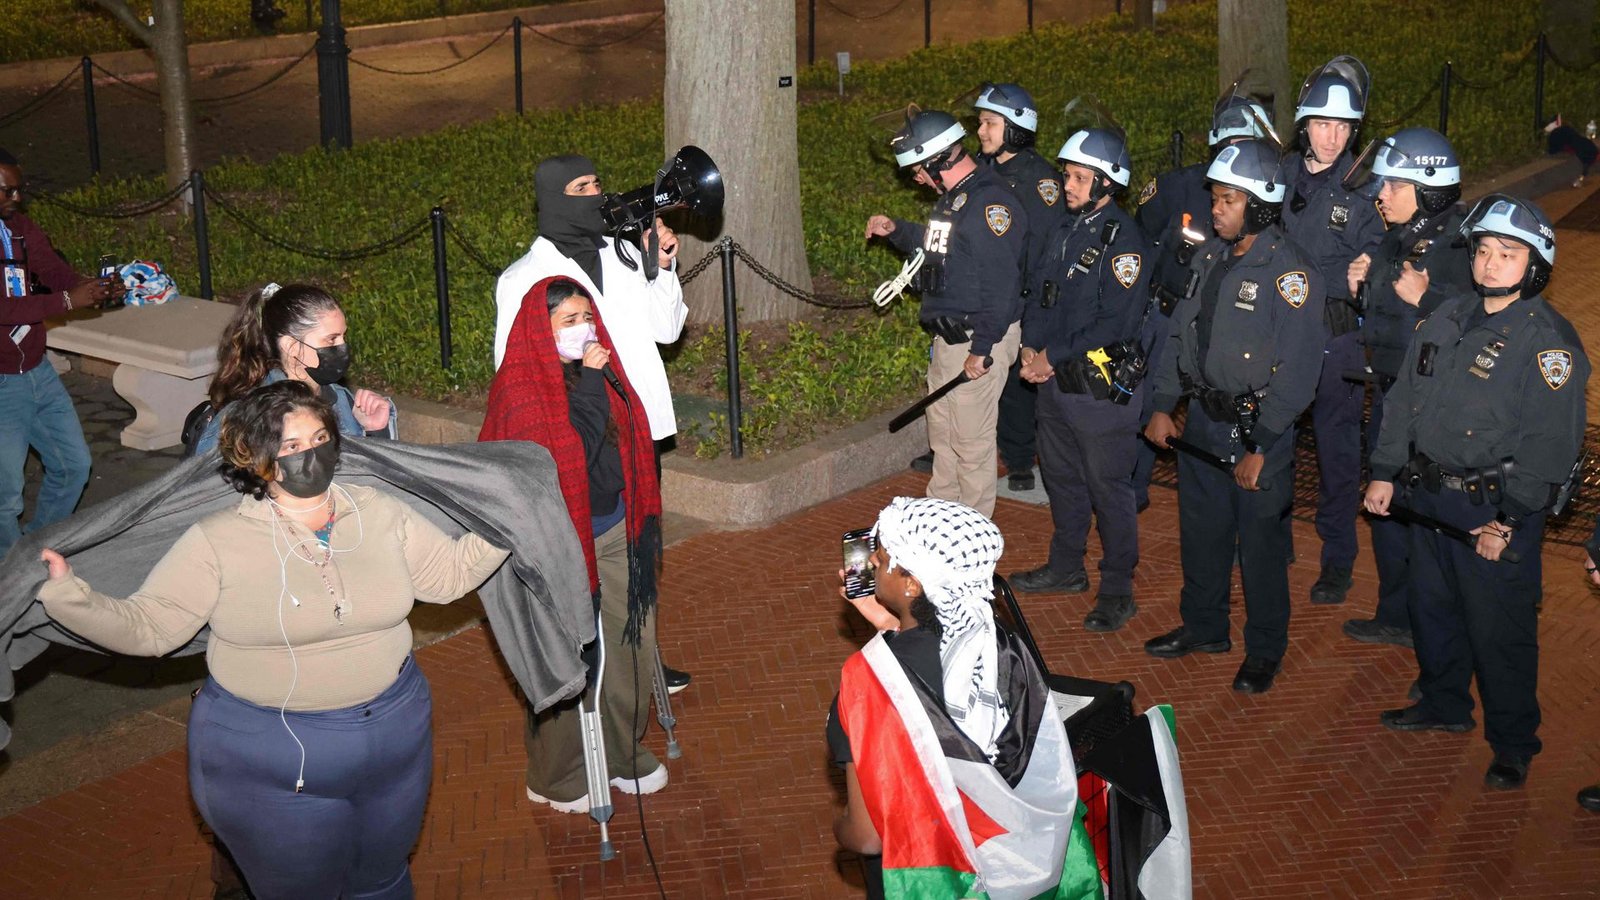 Demonstranten und Polizisten auf dem Gelände der Columbia University in New YorkFoto: AFP/JULIA WU